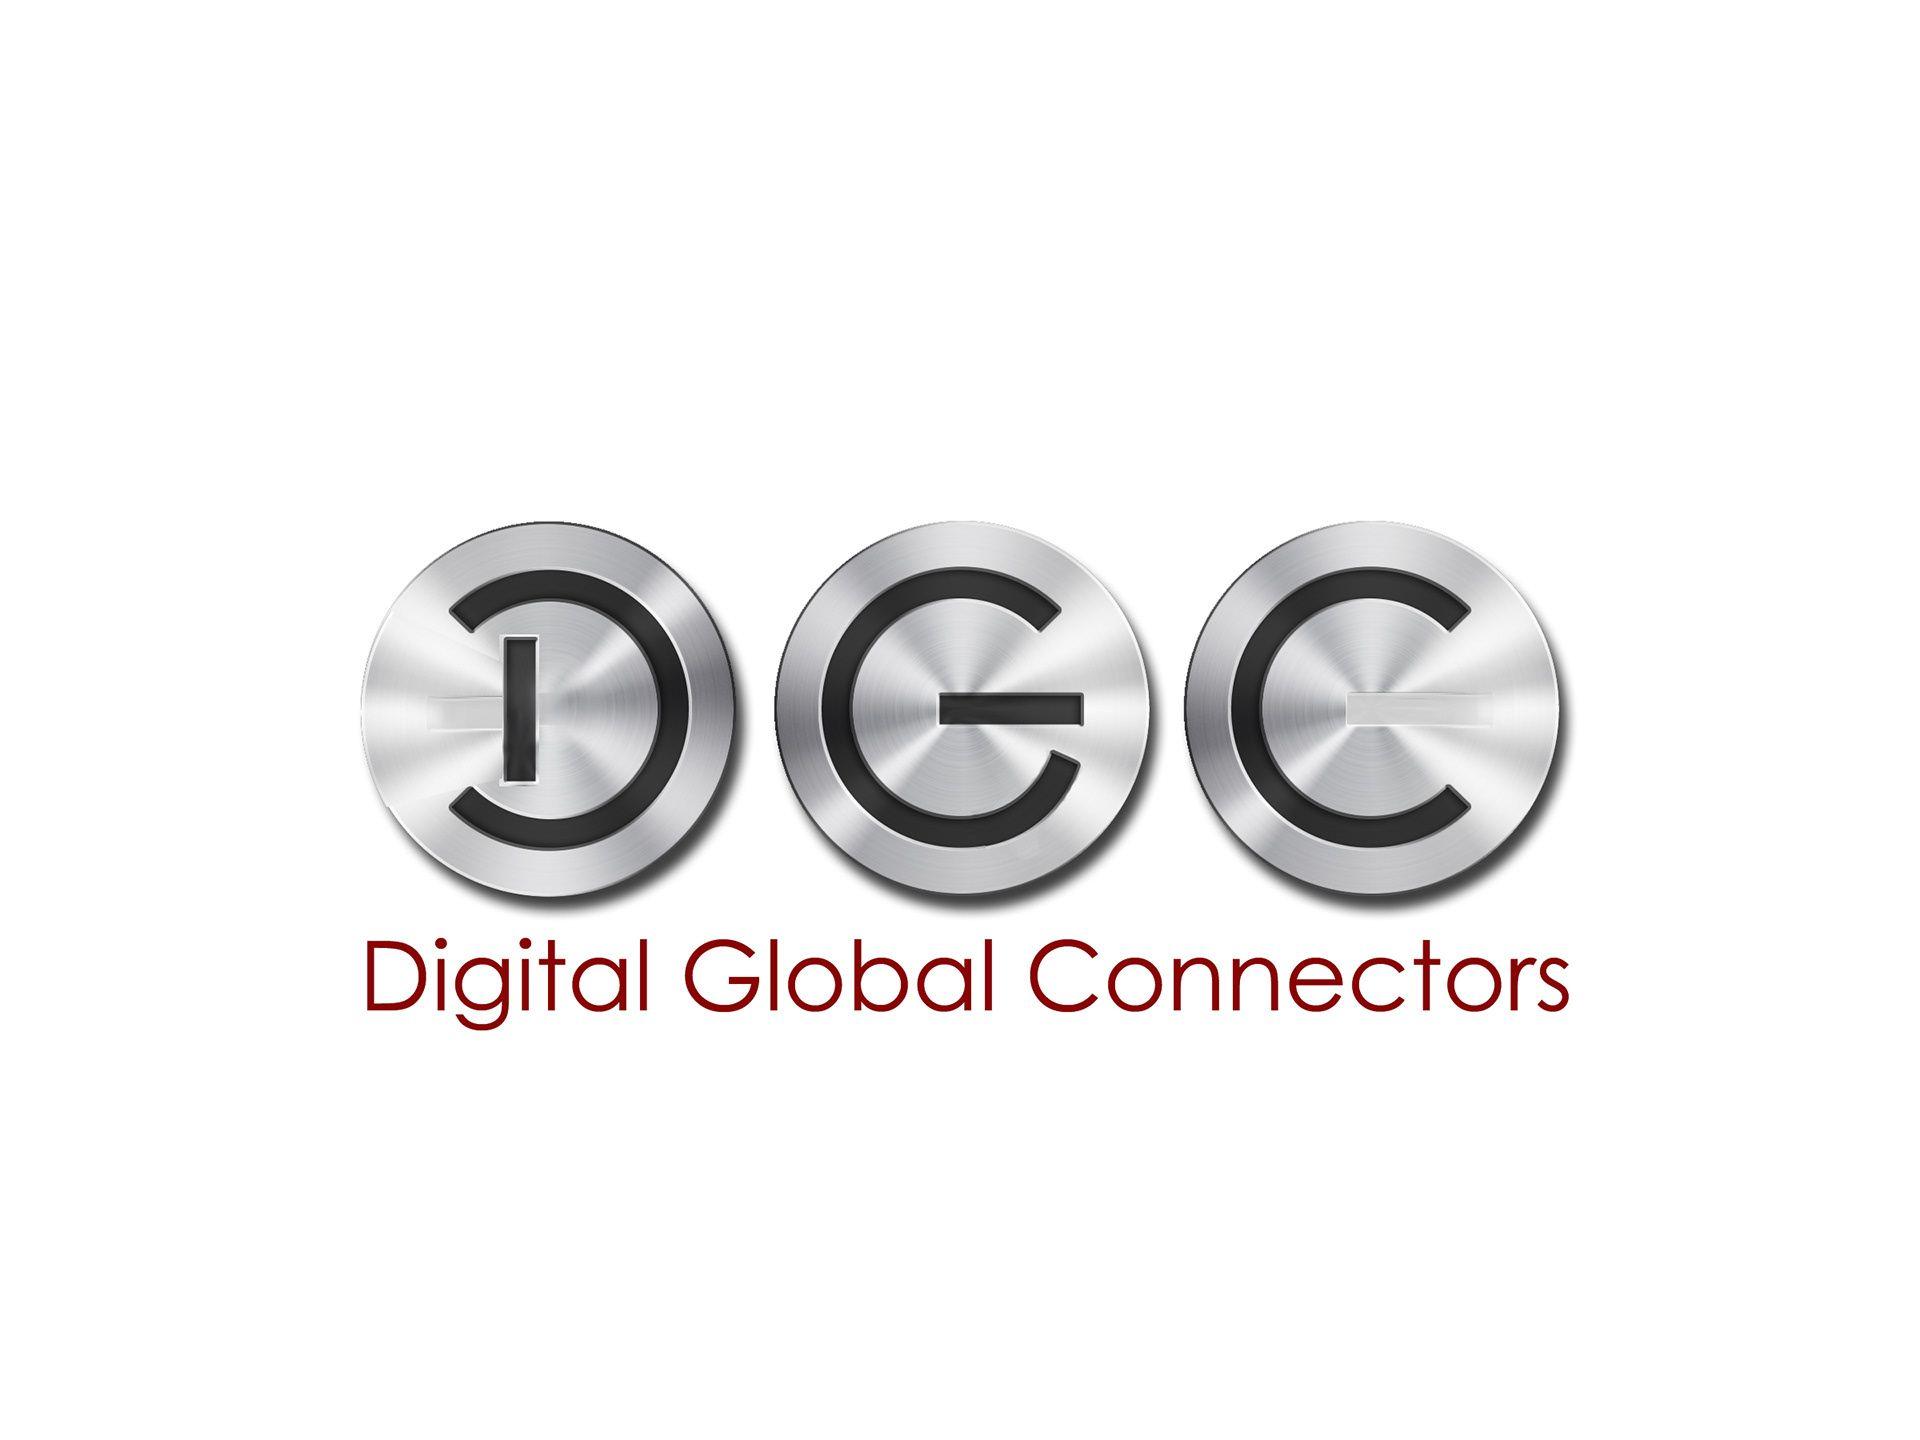 DGC Logo - John Martin - 